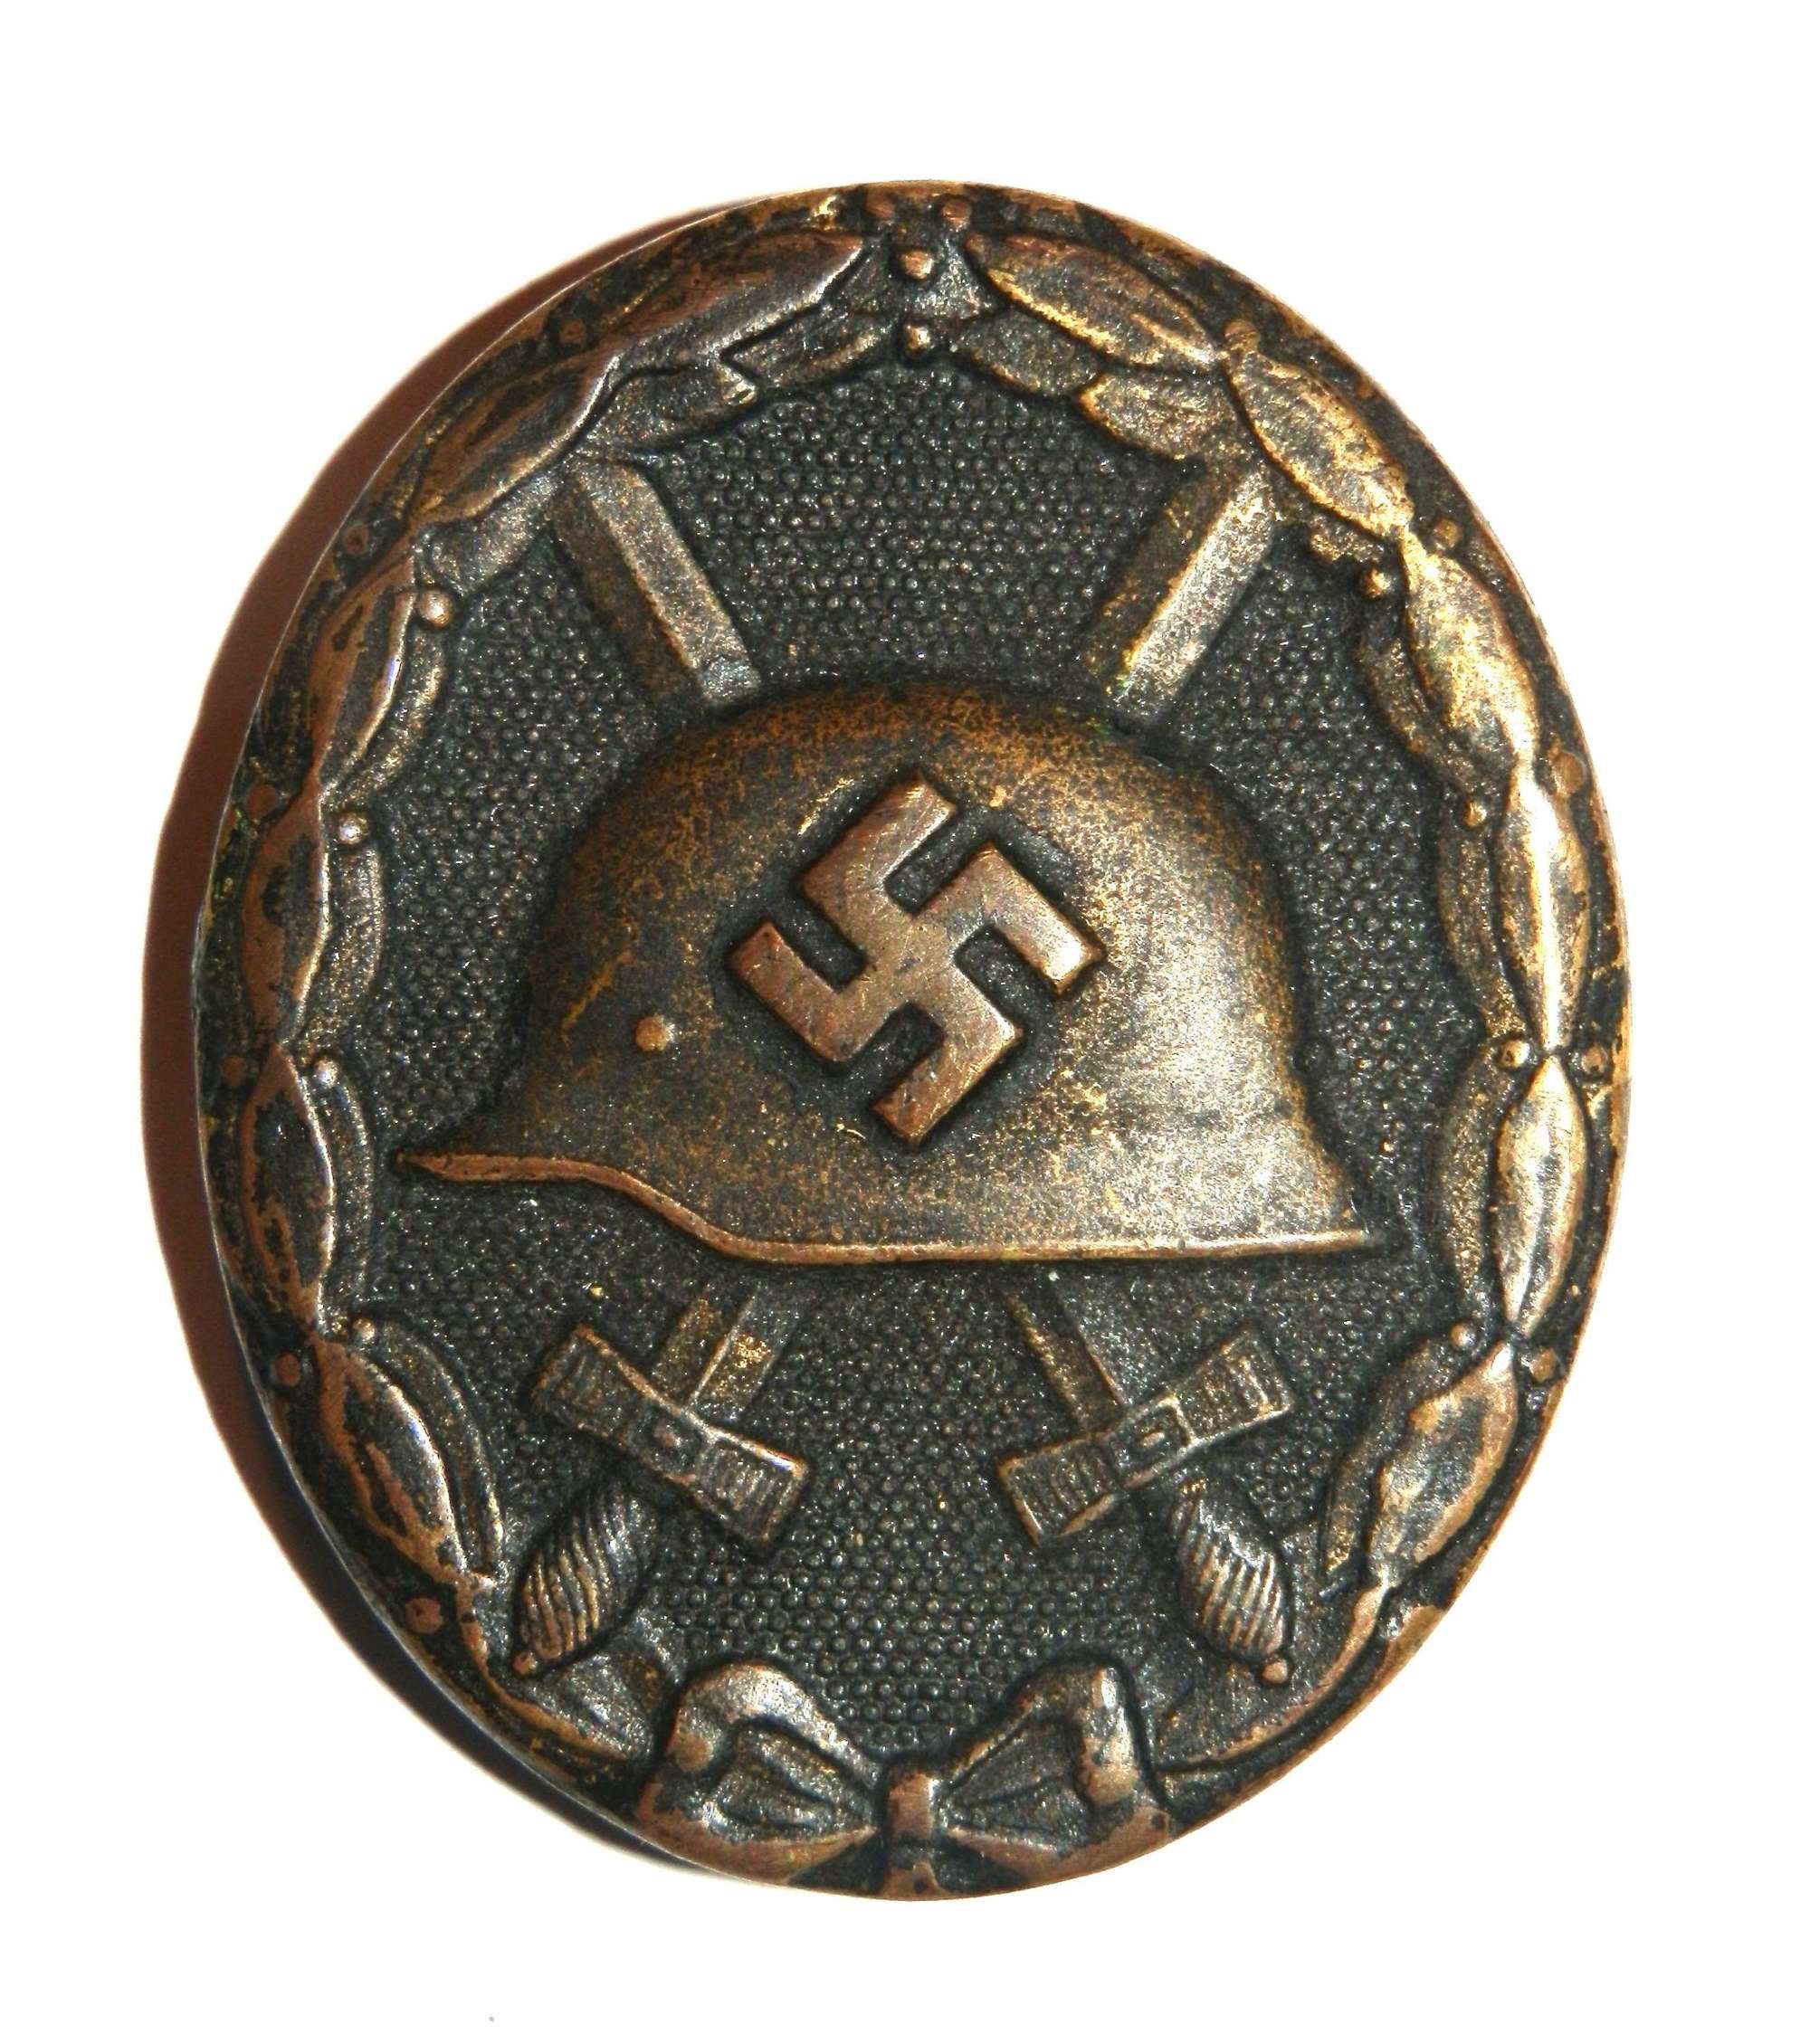 German Black Wound Badge.